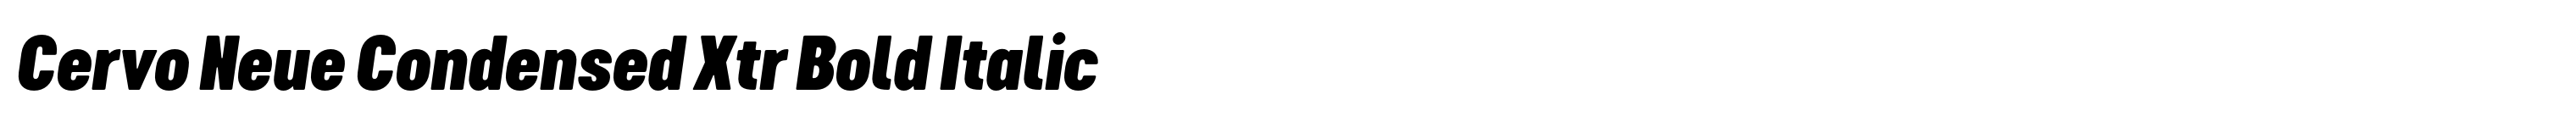 Cervo Neue Condensed Xtr Bold Italic